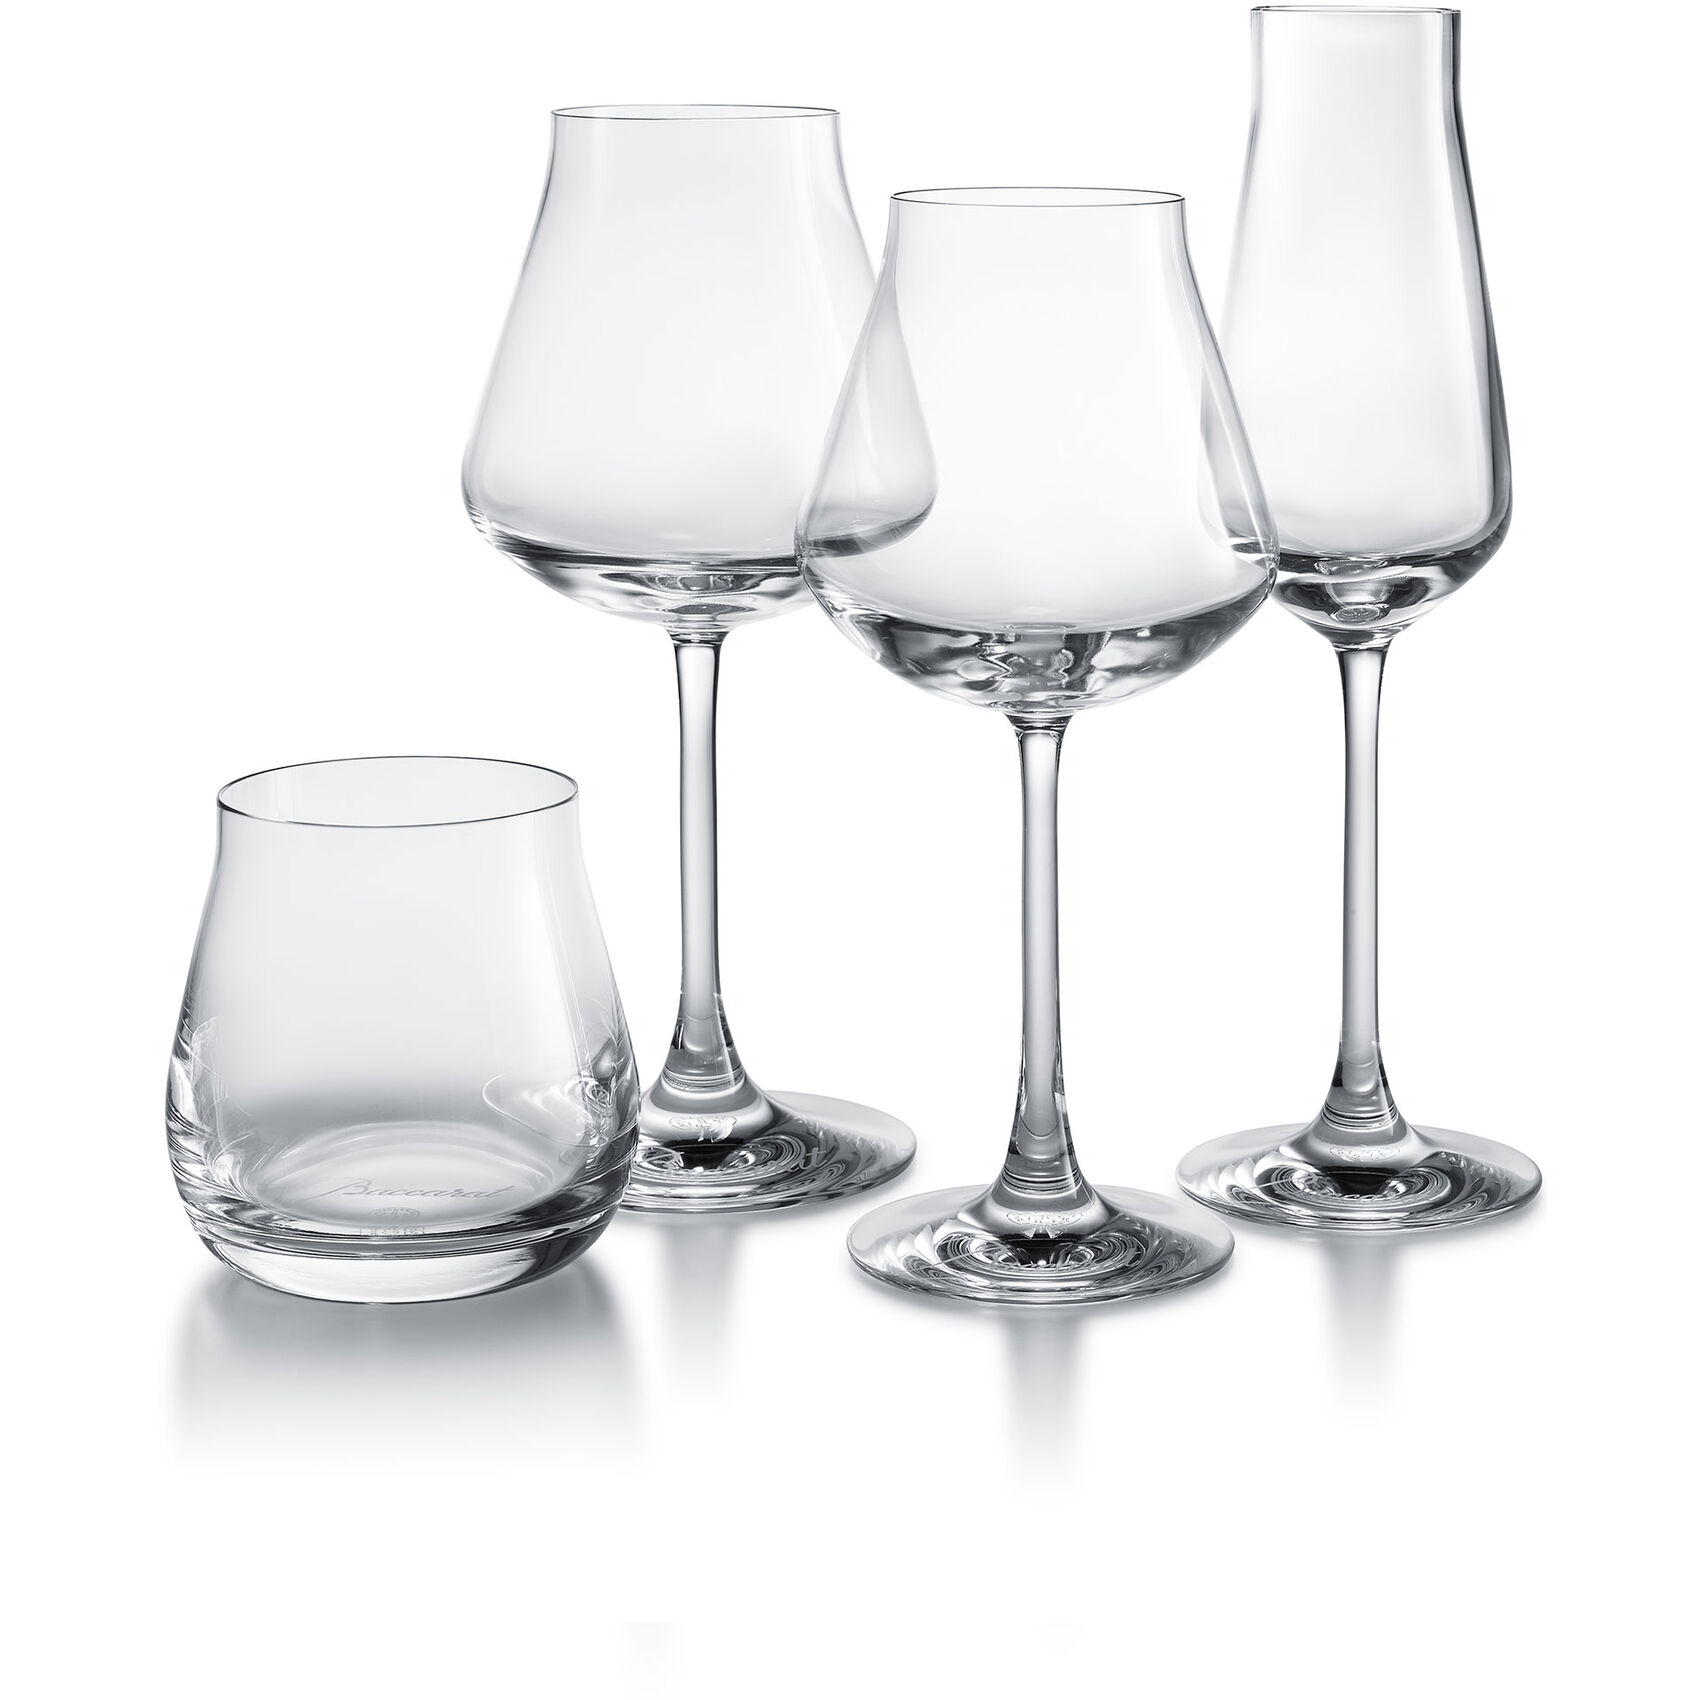 Degustation set<br>Trumbler + Wine glasses W&R + Flute<br>Château Baccarat